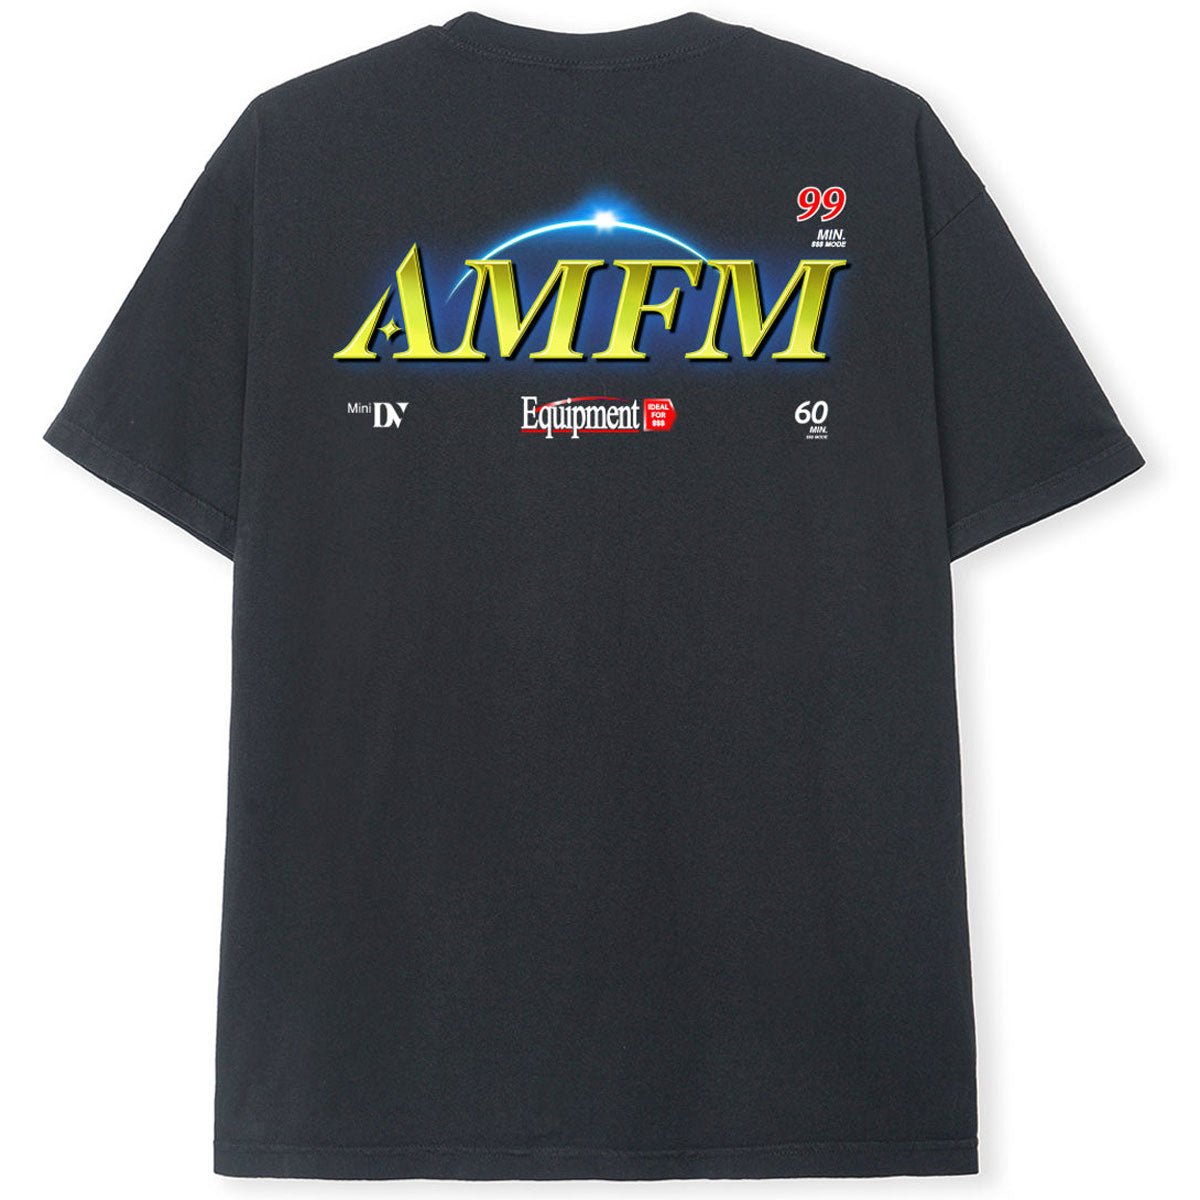 AM-FM DVC T-Shirt - Black image 1